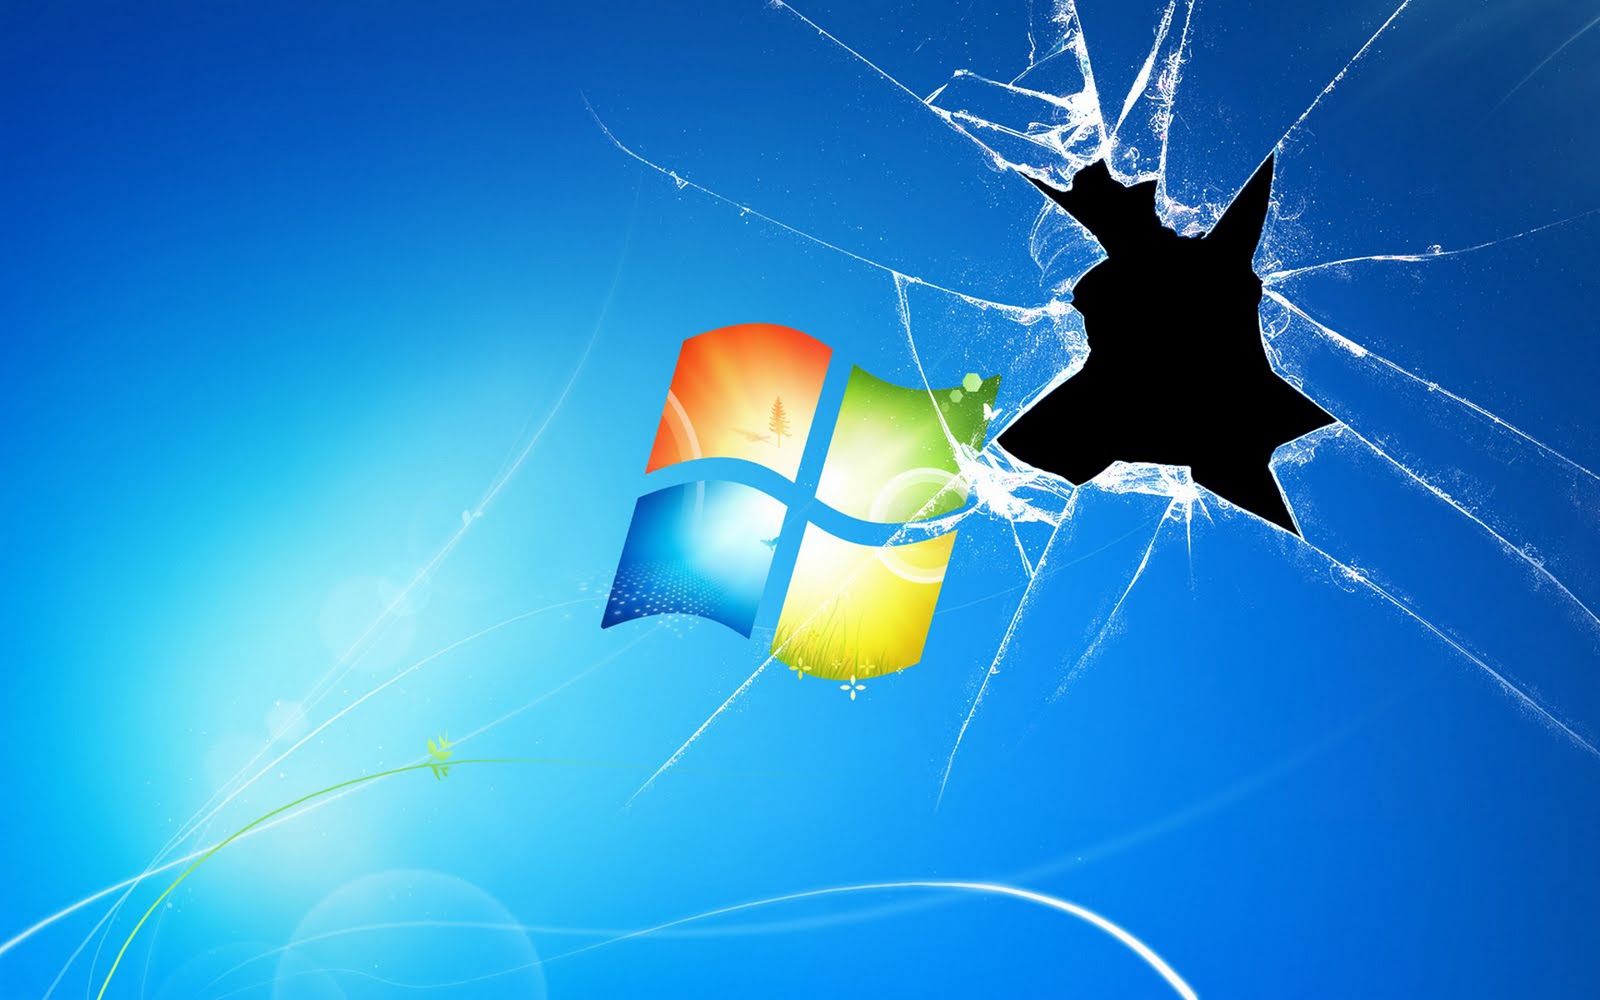 Bạn đang tìm kiếm một hình nền đẹp mắt cho PC của mình? Hãy tải ngay hình nền Windows 7 Blue miễn phí để trang trí desktop của bạn thêm độc đáo và tươi mới. Với hình nền này, màn hình của bạn sẽ trở nên bắt mắt và sinh động hơn bao giờ hết! 